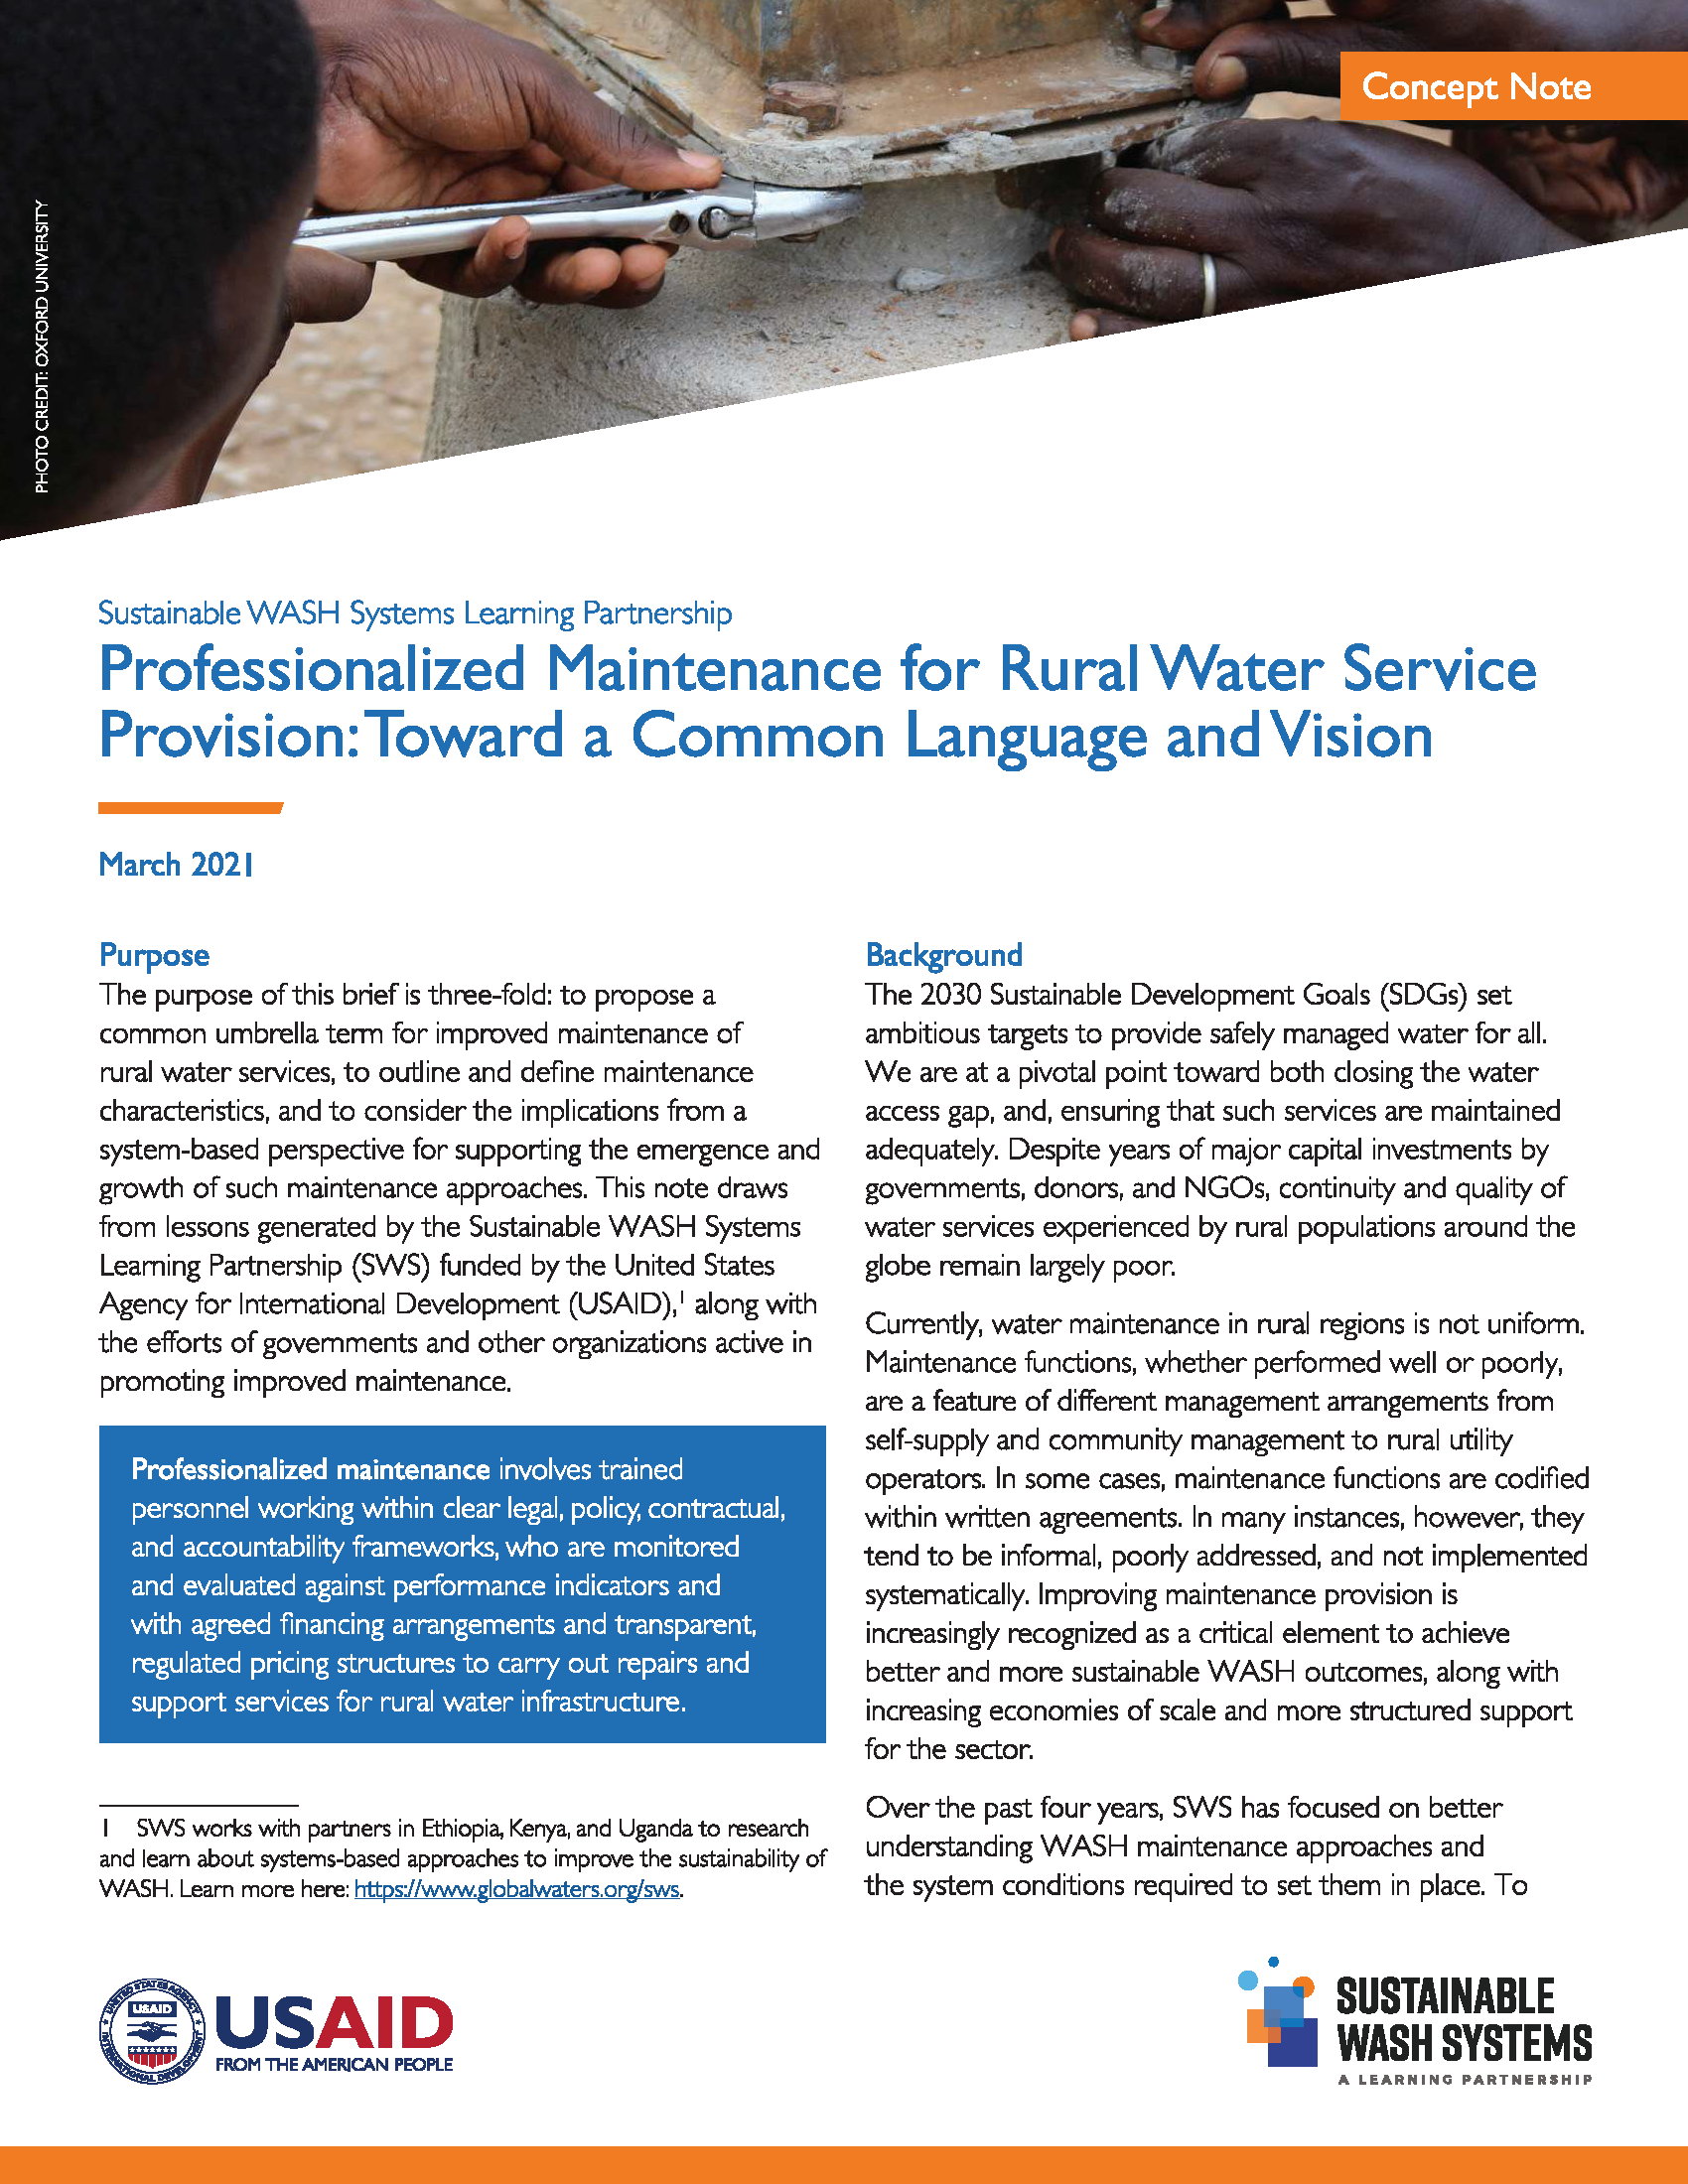 Page de couverture de « Maintenance professionnelle pour la fourniture de services d'eau en milieu rural : vers un langage et une vision communs ».